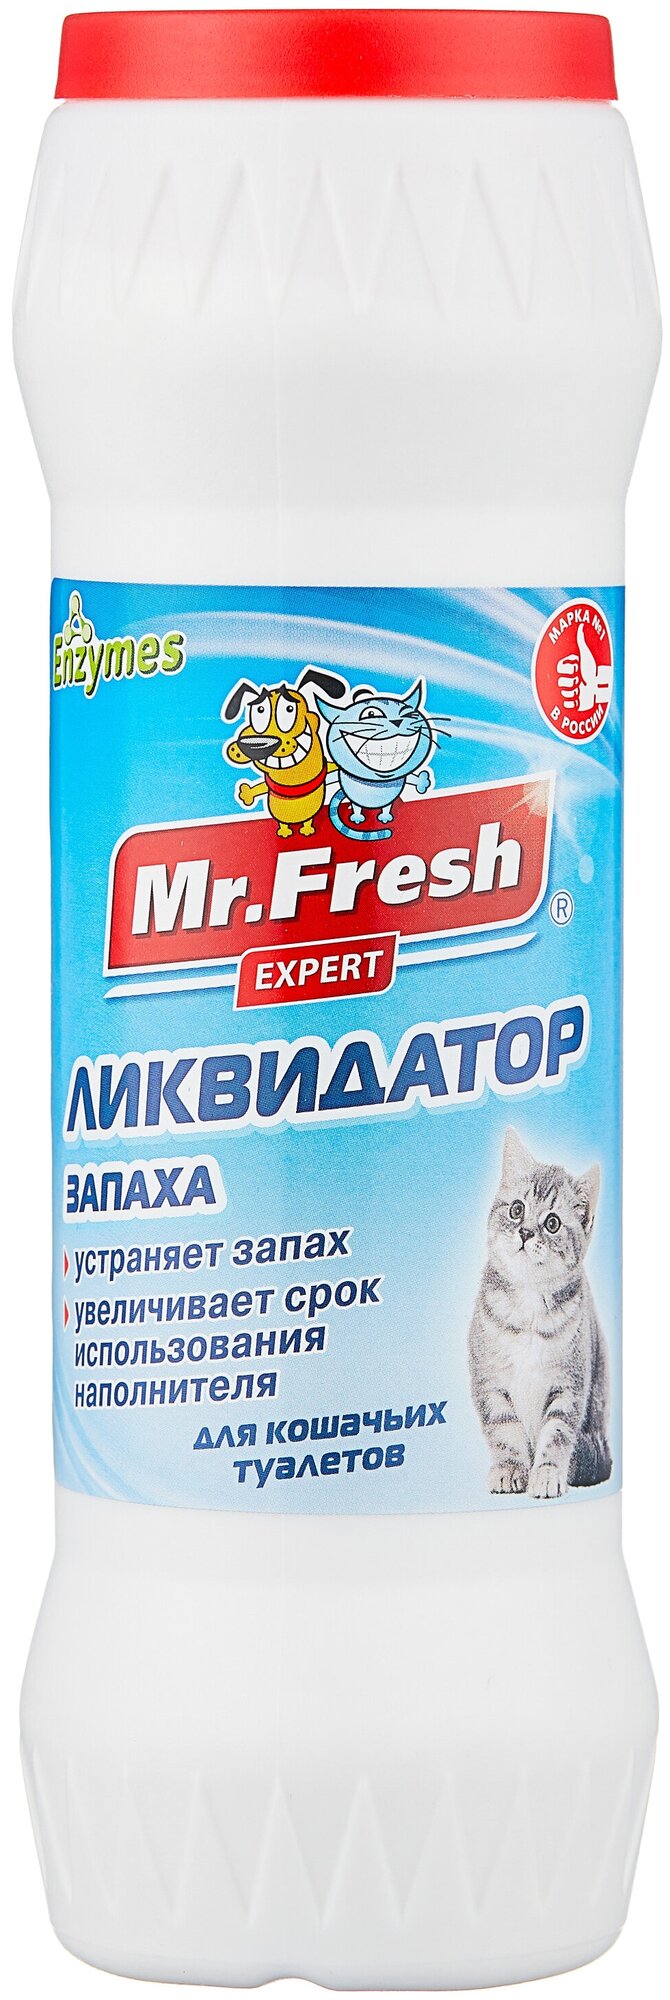 Ликвидатор запахов Mr.Fresh Expert 2в1, порошек для кошачьих туалетов, 500 гр.